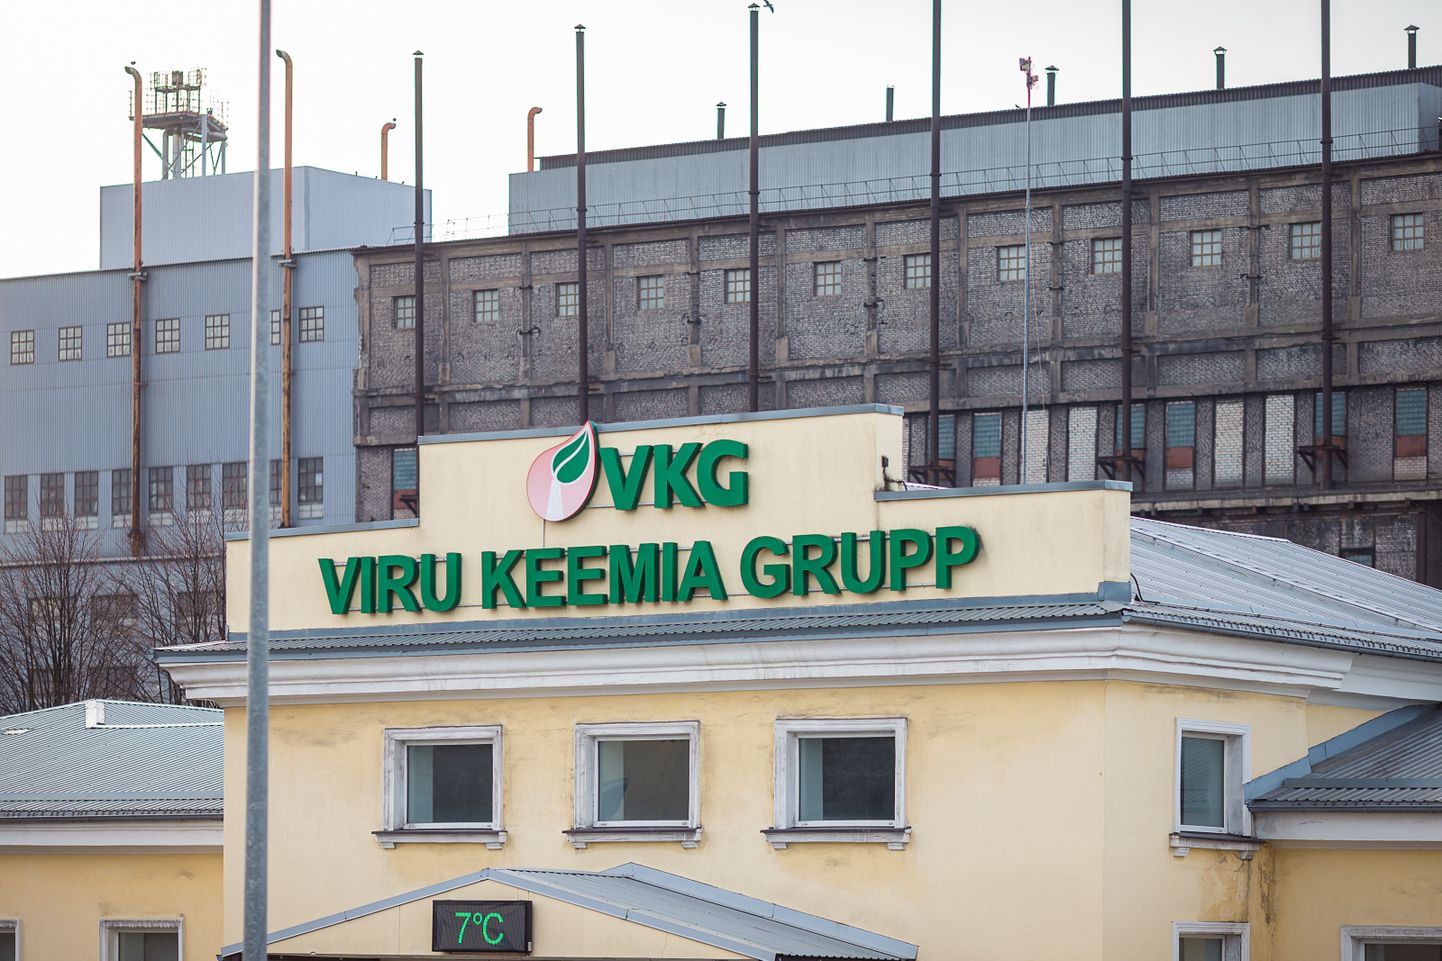 По словам Ахти Асманна, если "VKG" не сможет построить новую шахту, в 2027 году заводы масел в Кохтла-Ярве остановятся.